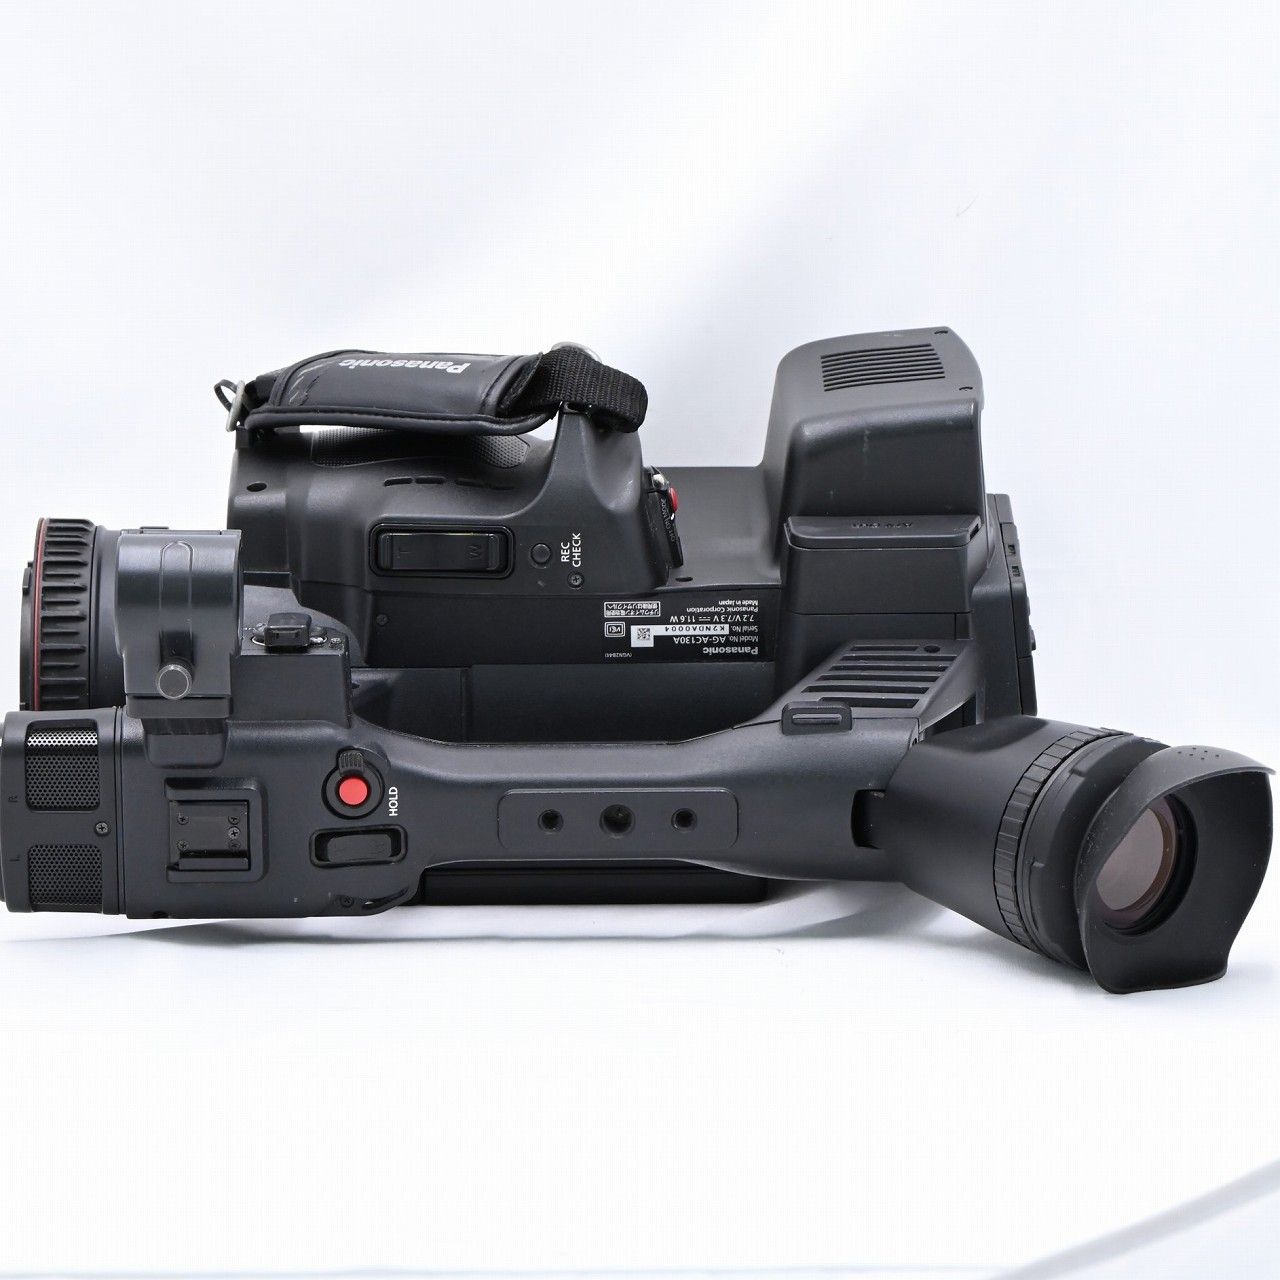 パナソニック Panasonic AG-AC130A 業務用ビデオカメラ ビデオカメラ【中古】